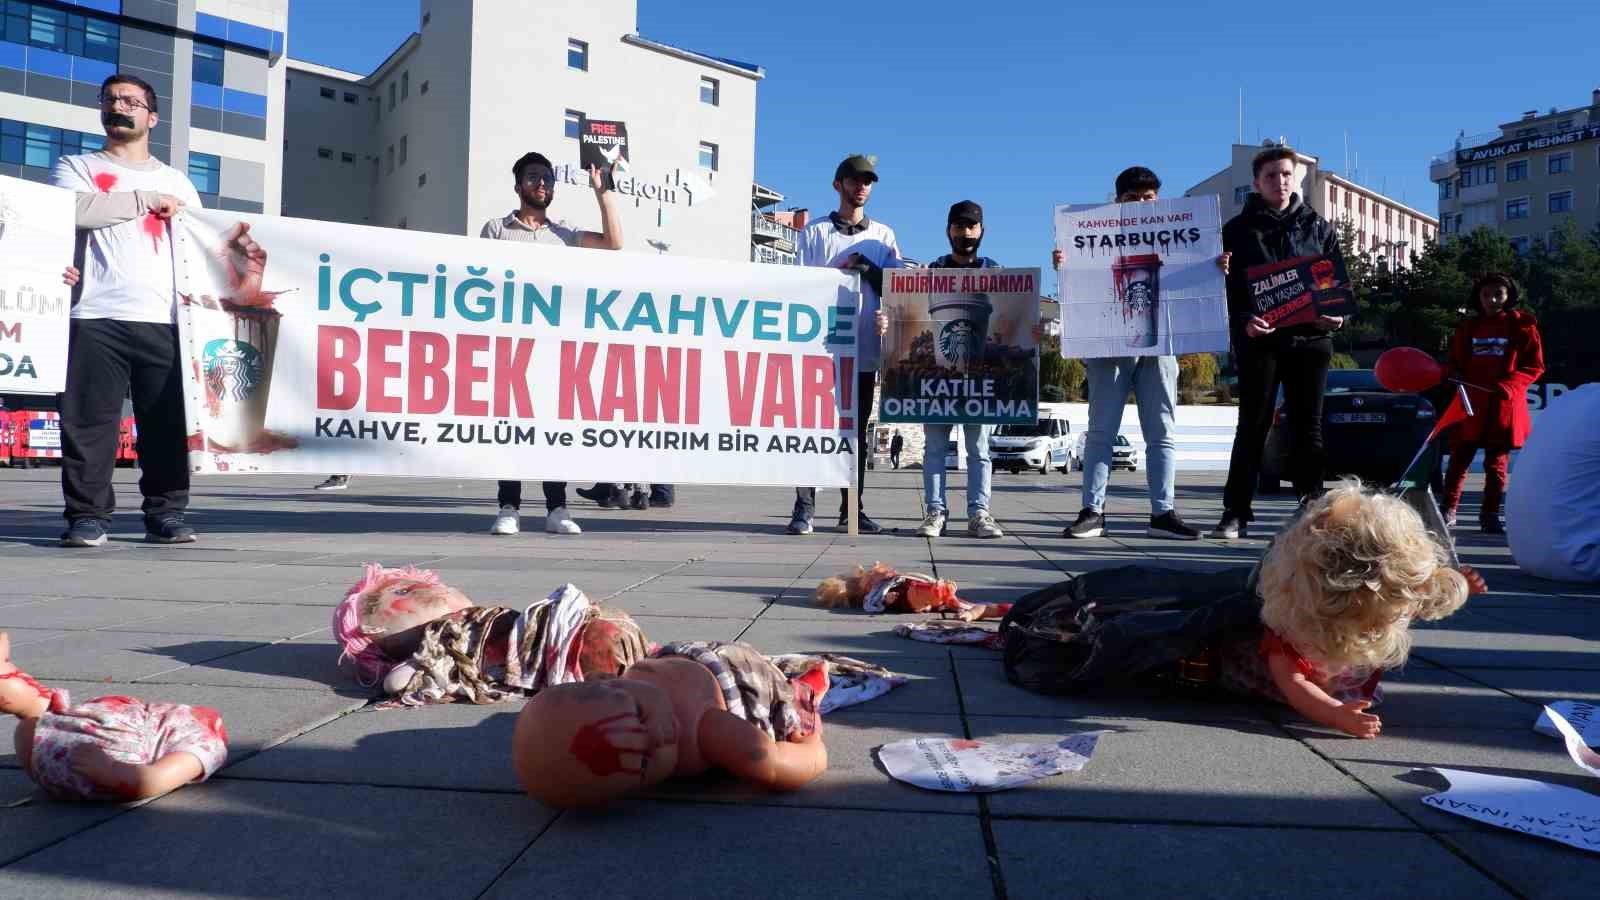 Erzurum’da Gazze için sessiz eylem